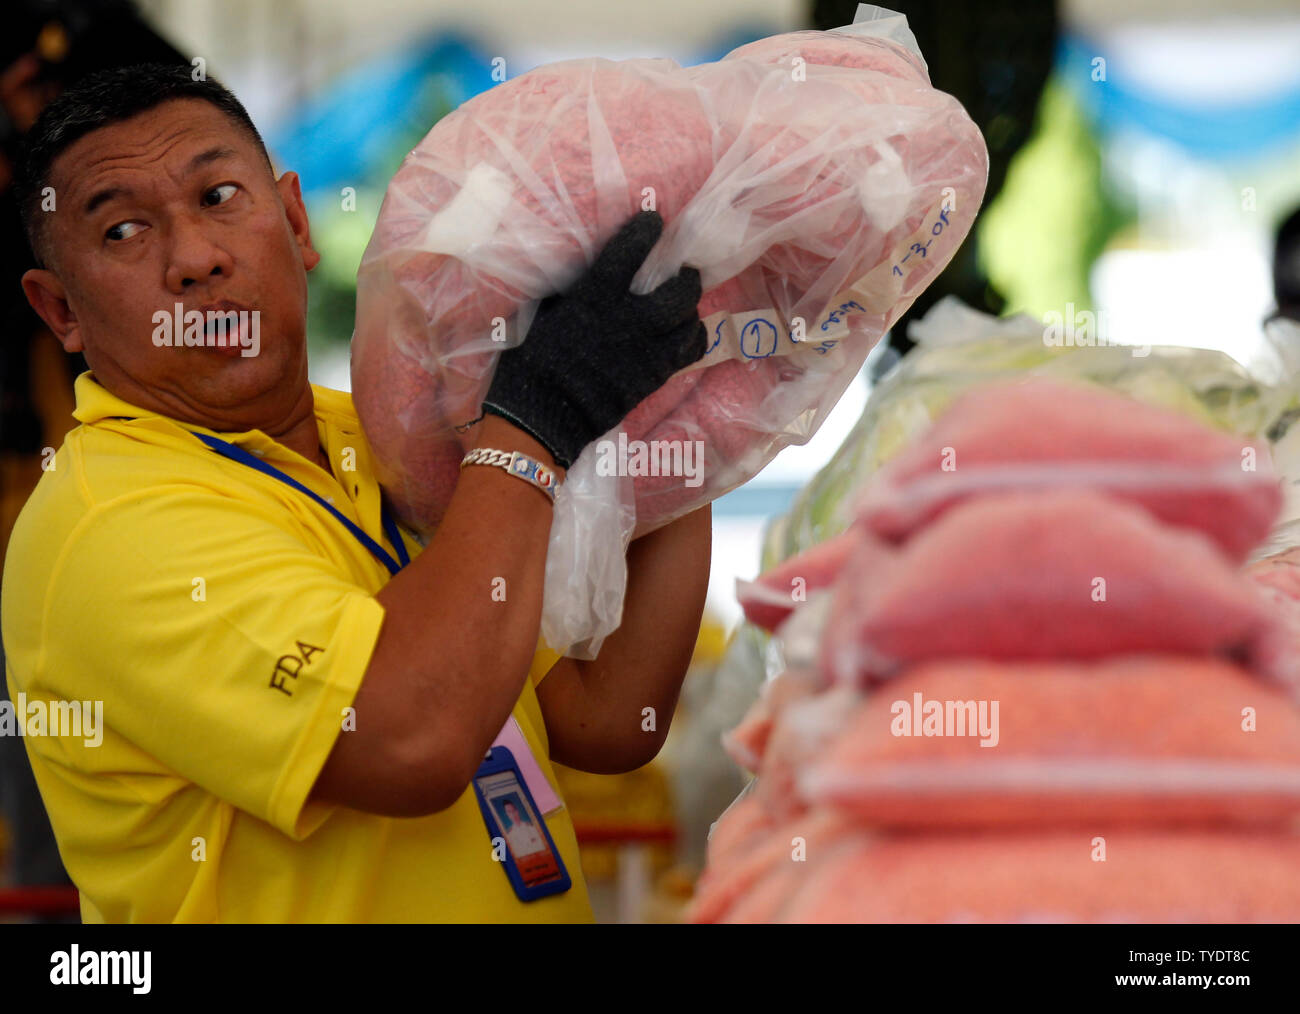 Un Thaï officielle des stupéfiants organise des sacs de comprimés de méthamphétamine au cours de la 49e la destruction des stupéfiants confisqués de la cérémonie pour marquer la Journée internationale contre l'abus et le trafic illicite de province d'Ayutthaya, au nord de Bangkok.Plus de 16 467 kg de drogues, dont la méthamphétamine, la marijuana, l'héroïne et d'opium, d'une valeur de plus de 600 millions de dollars, ont été détruits, le gouvernement thaïlandais a commencé sa campagne anti-drogue, selon le Ministère thaïlandais de la santé publique. Banque D'Images